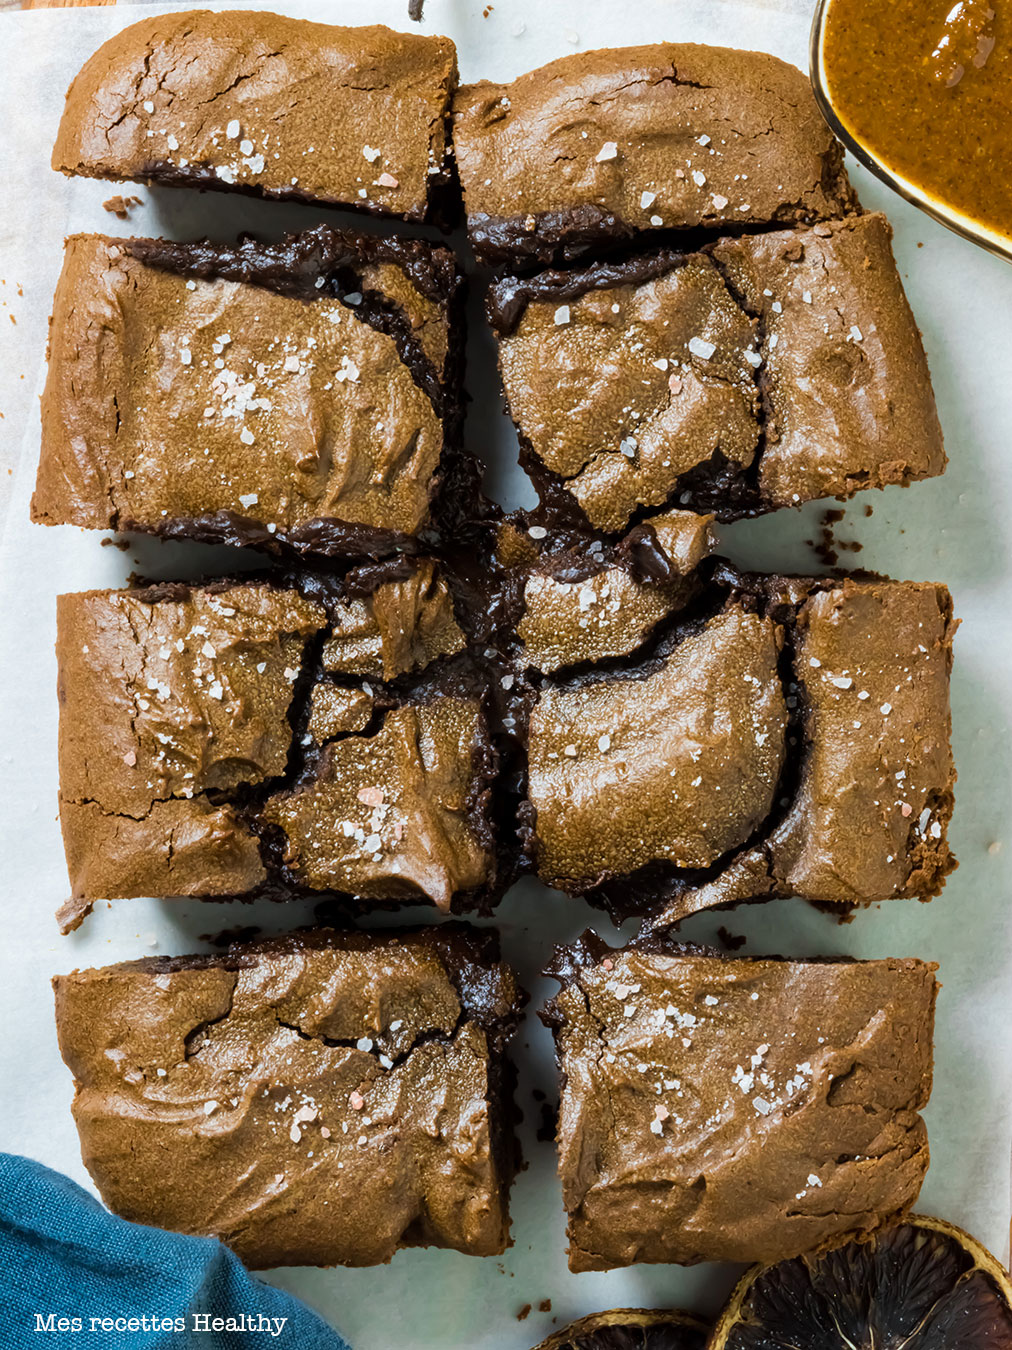 recette healthy-brownie au praliné-fait maison-sans gluten-sans sucre